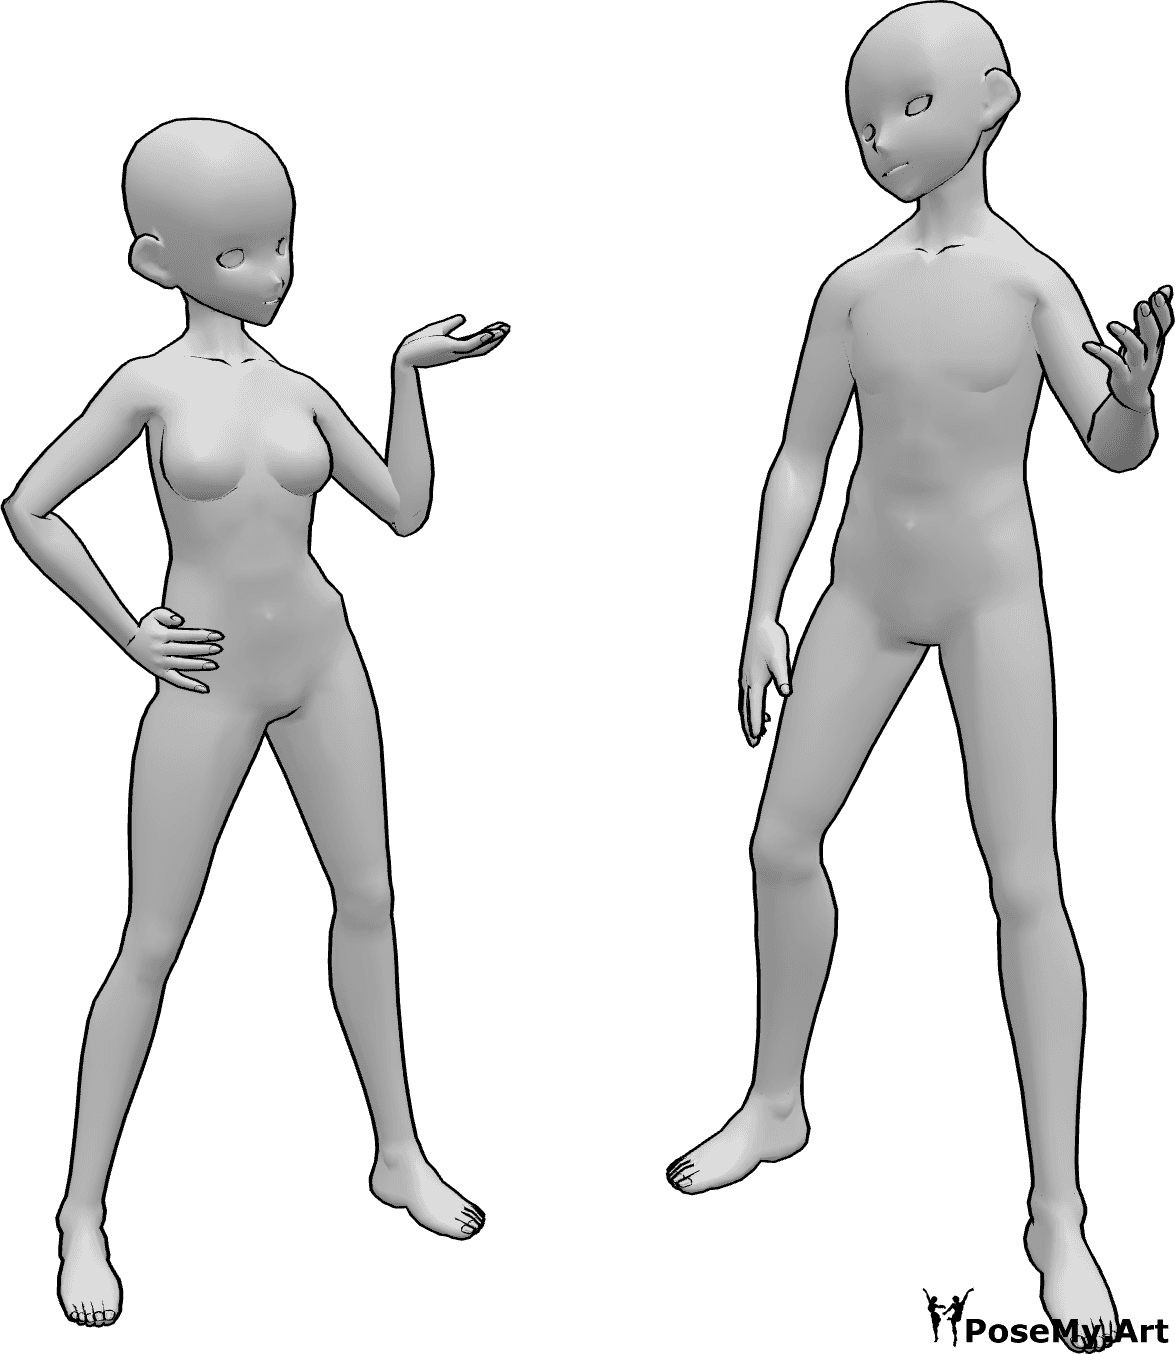 Referencia de poses- Postura de conversación femenina masculina - Anime femenino y masculino están discutiendo algo